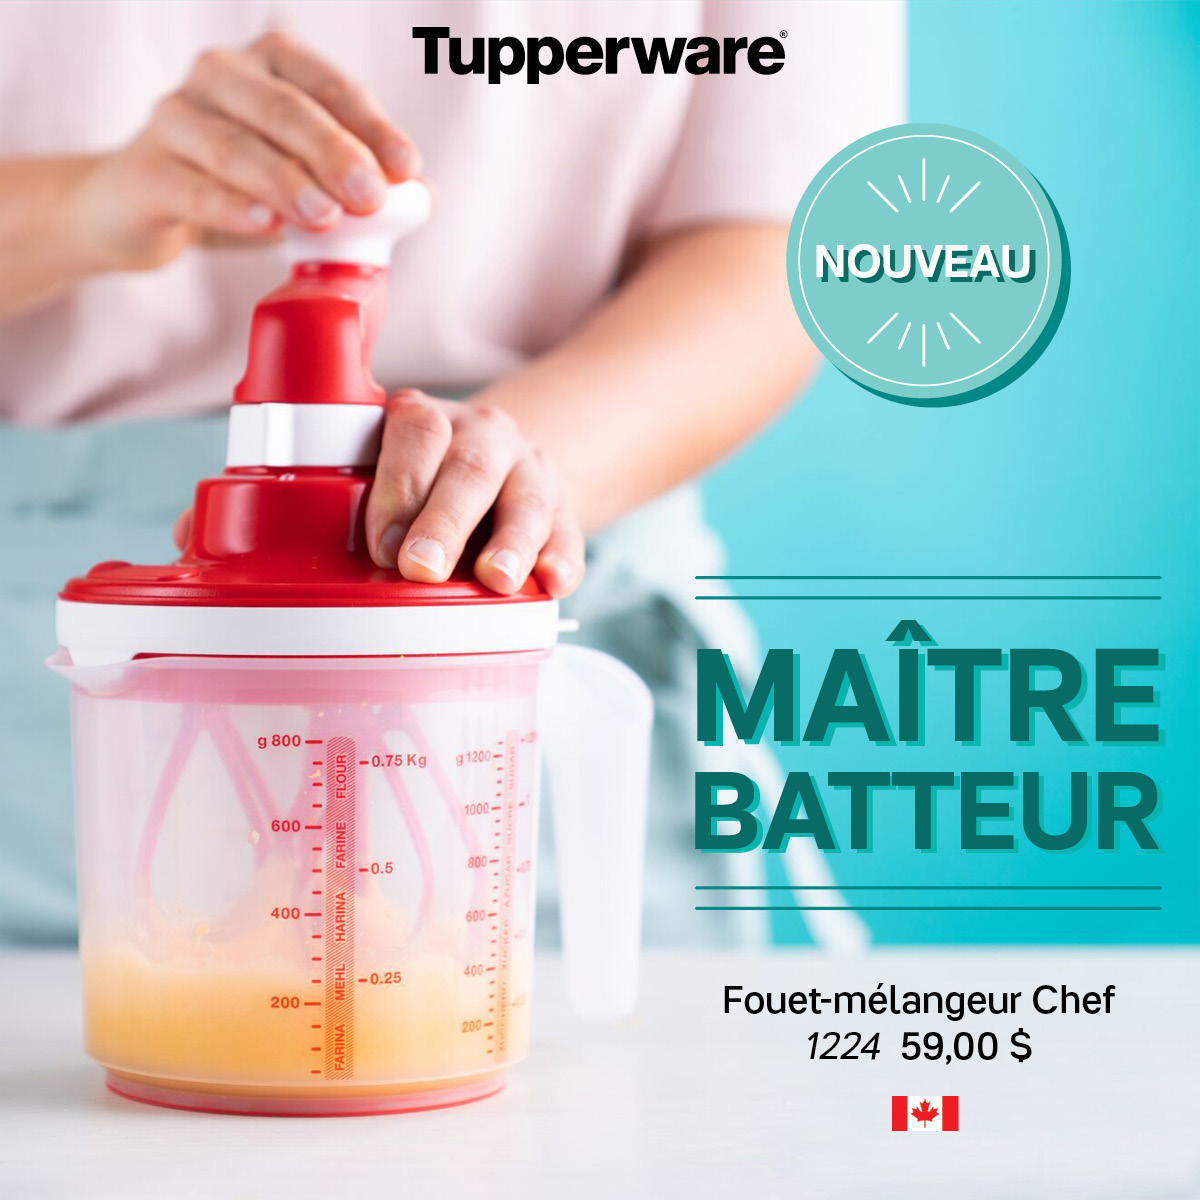 Le Nouveau Fouet Mélangeur Chef - Caroline Schoofs - Ma vie en Tupperware